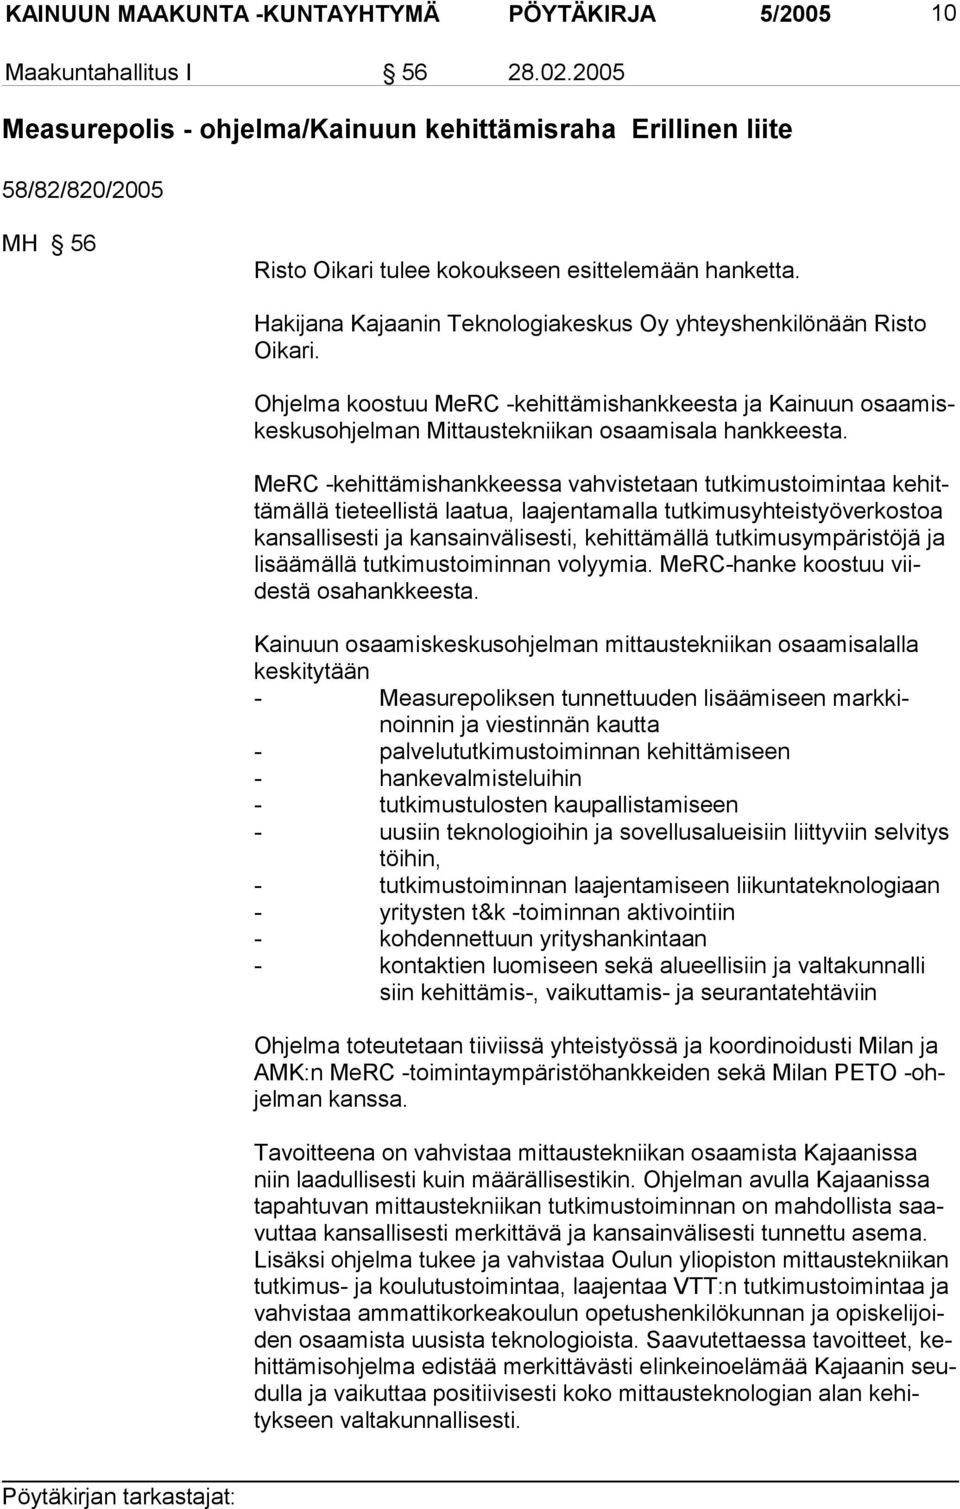 Hakijana Kajaanin Teknologiakeskus Oy yhteyshenkilönään Risto Oikari. Ohjelma koostuu MeRC -kehittämishankkeesta ja Kainuun osaamiskeskusohjelman Mittaustekniikan osaamisala hankkeesta.